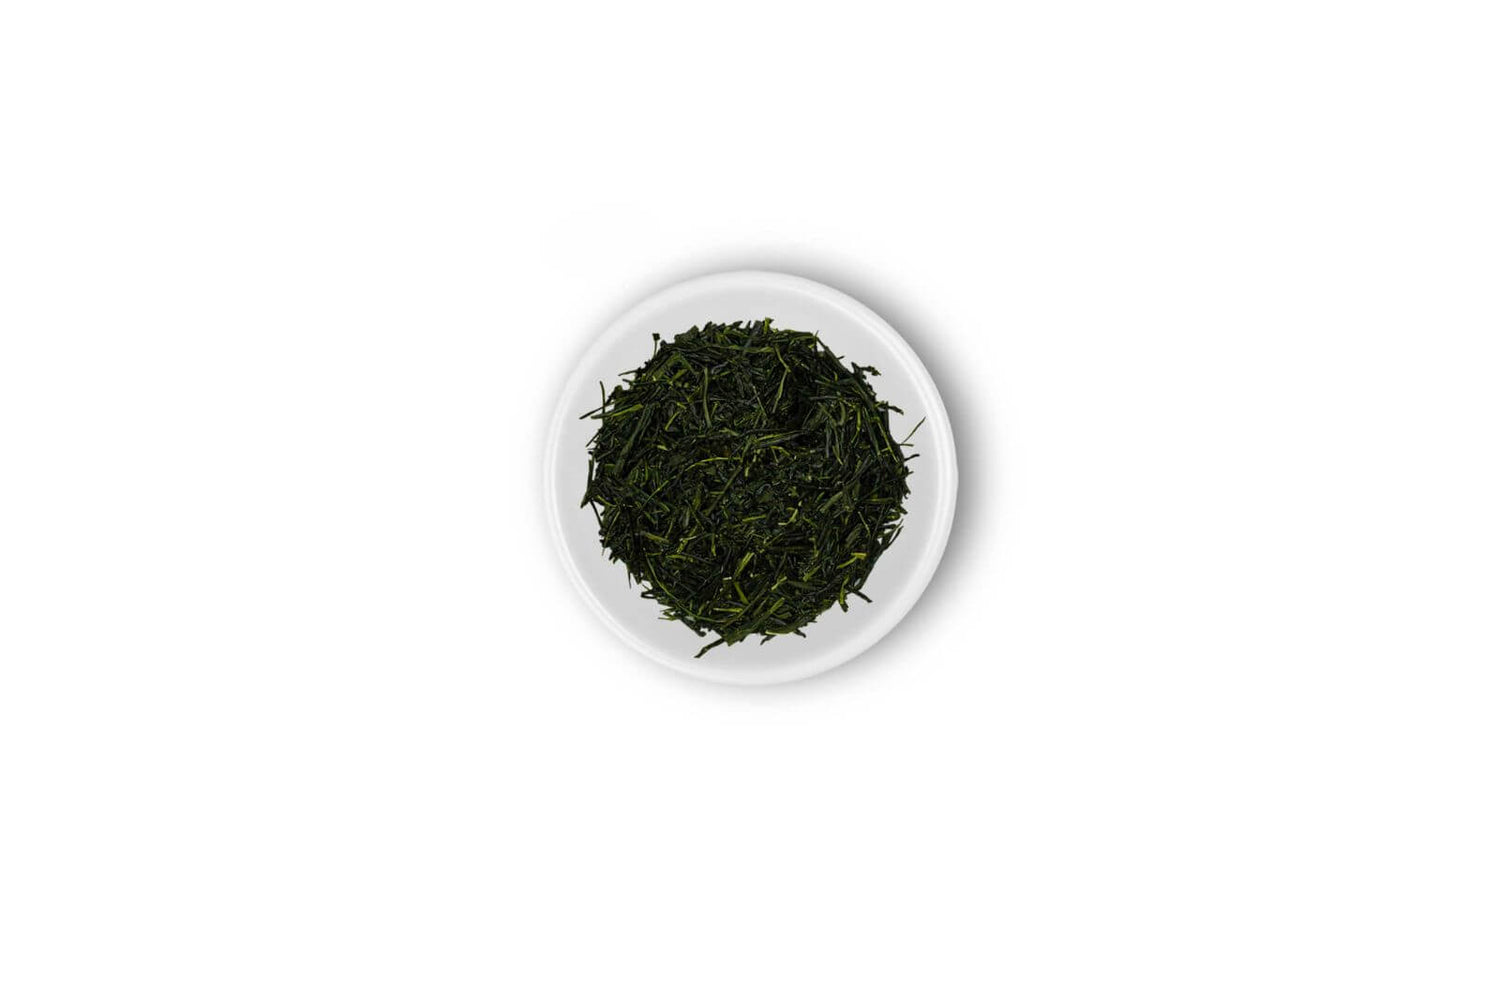 kabuse sencha tea leafs